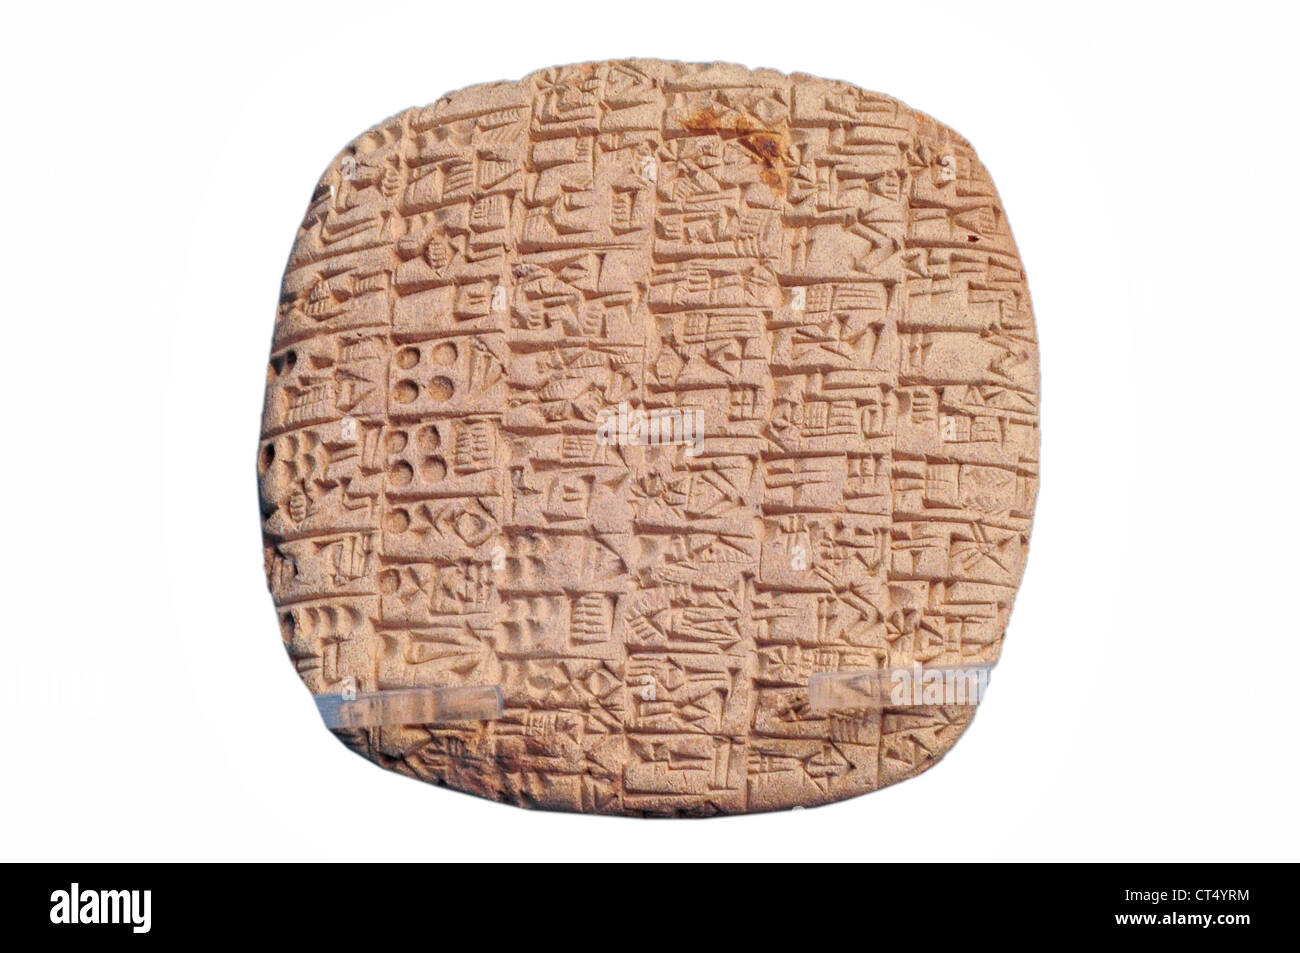 Carreau avec document à l'écriture cunéiforme sumérien, 2500 avant J.-C. Banque D'Images